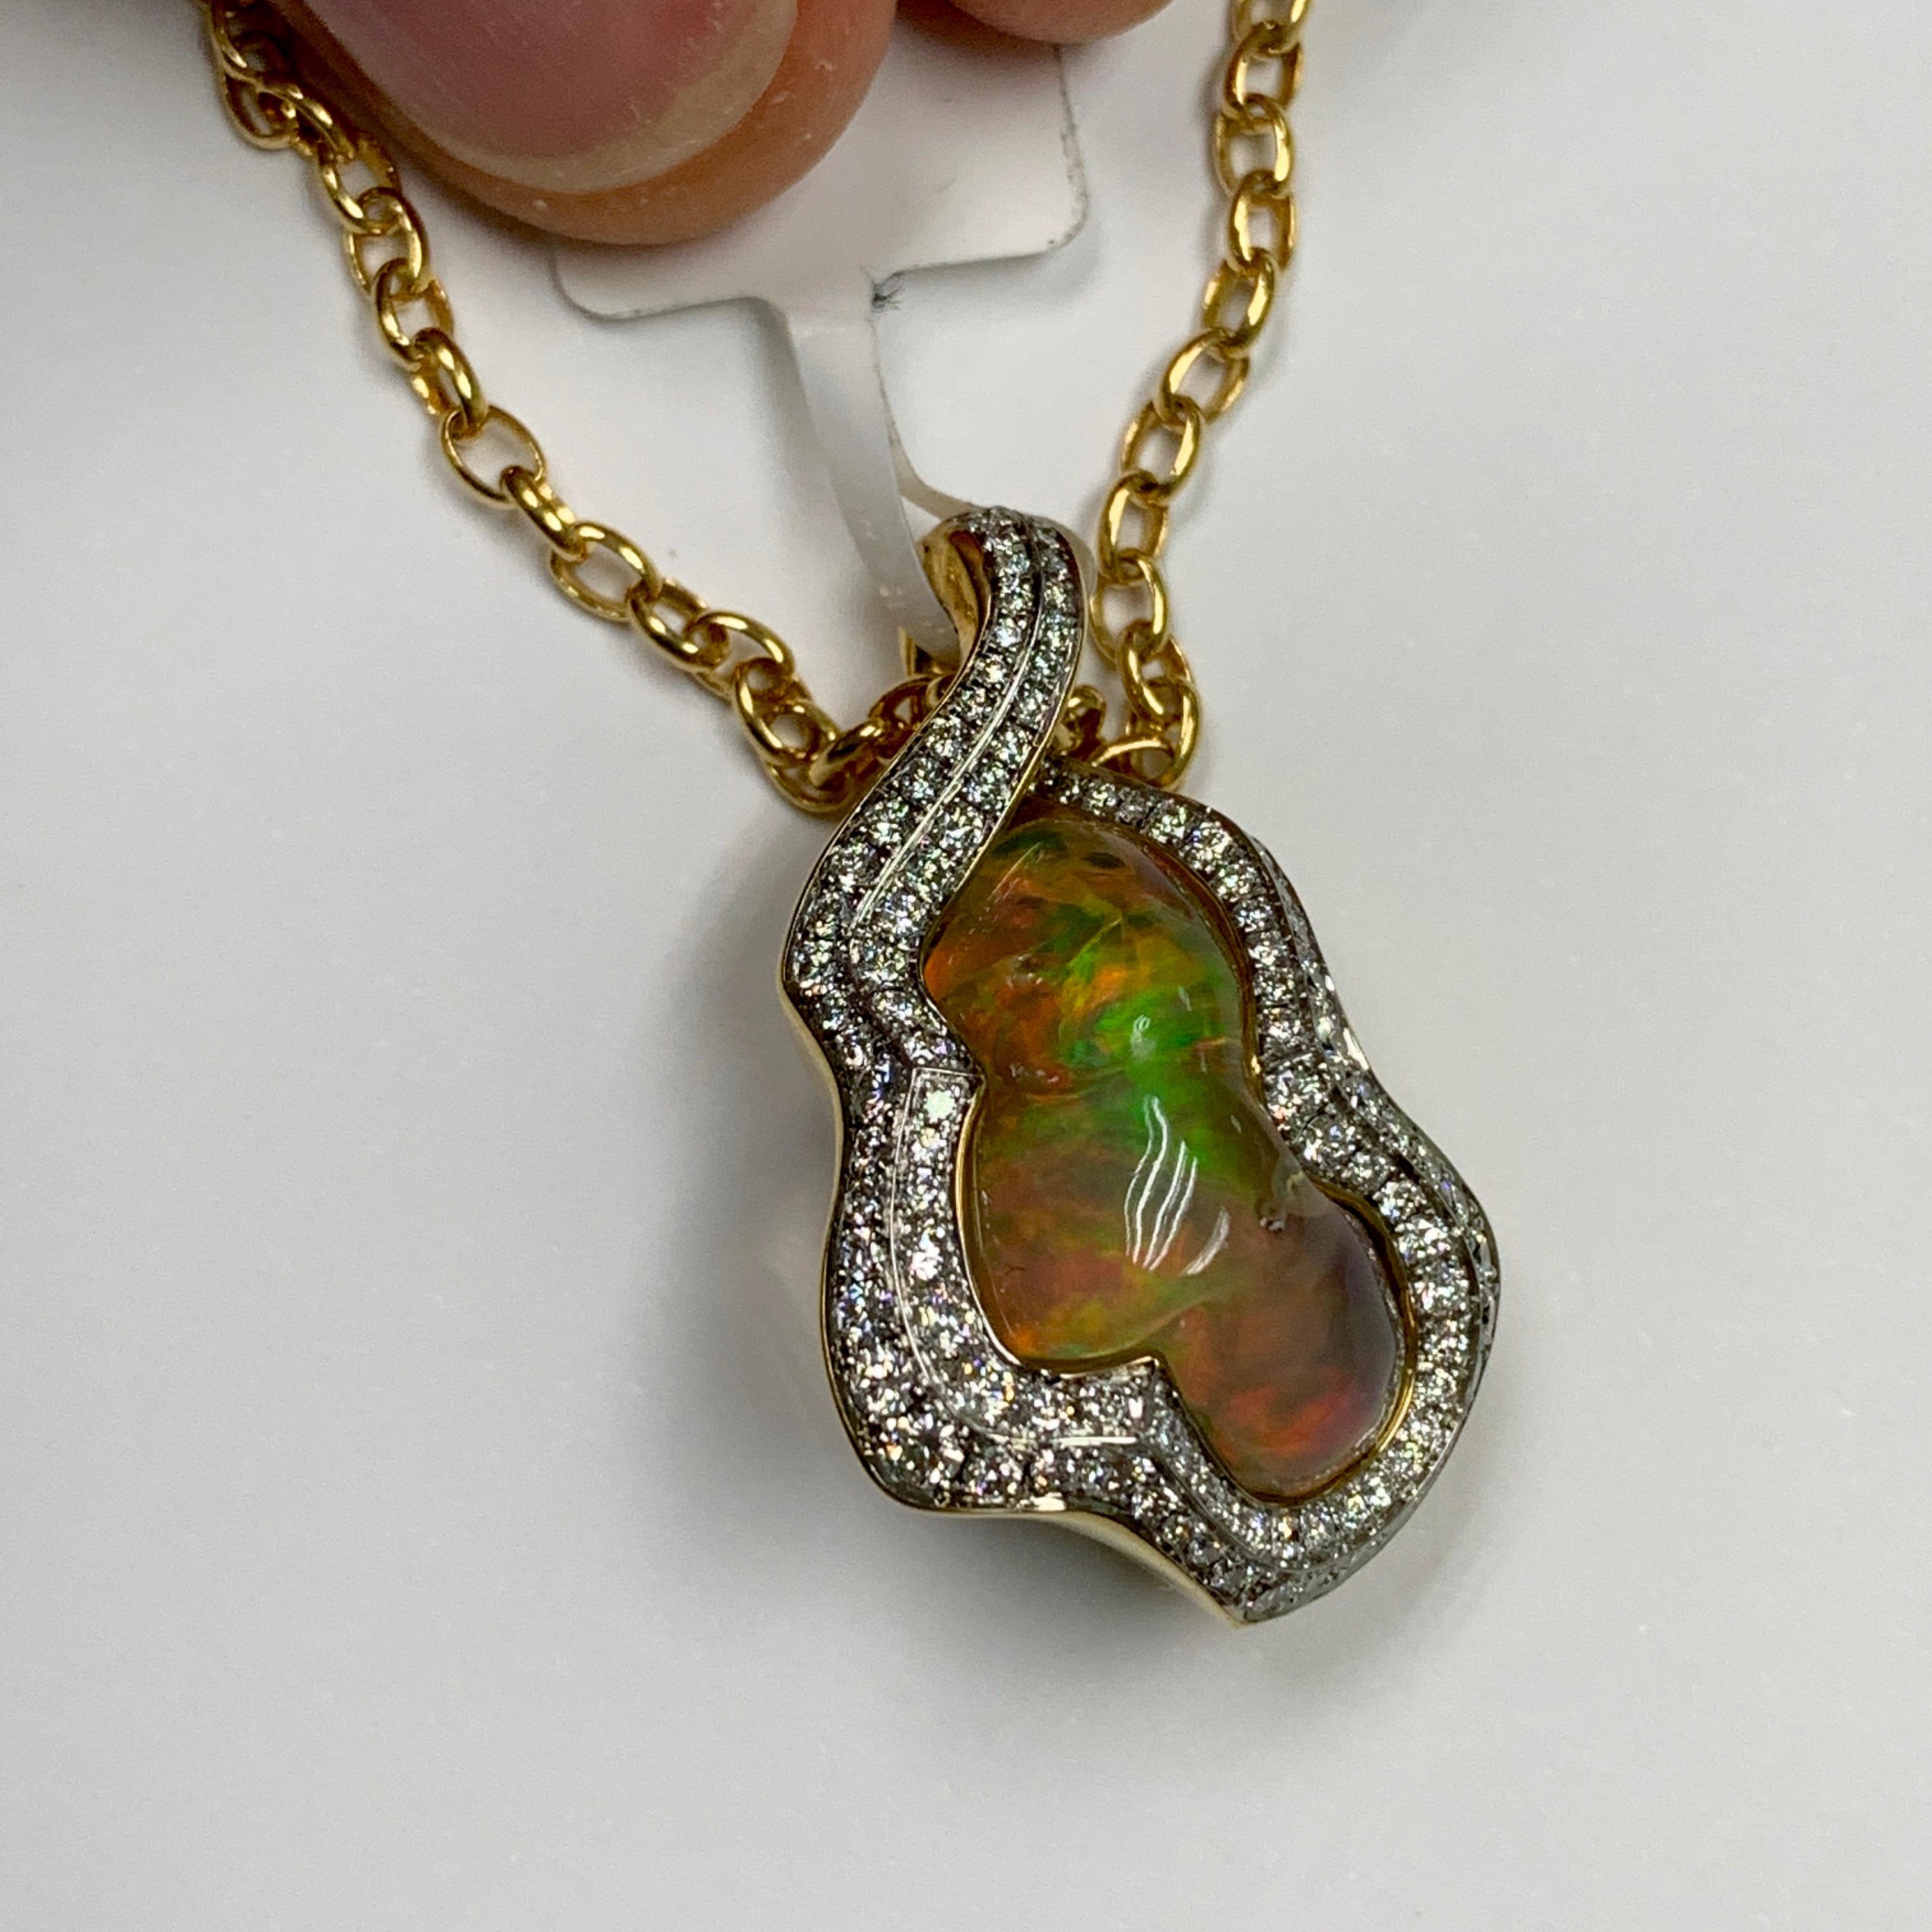 Mexikanischer Opal 13,48 Karat Diamanten Einzigartiger Anhänger aus 18 Karat Gelbgold
Opale lassen sich im Gegensatz zu vielen anderen Steinen kaum schleifen, sie sind immer einzigartig. Schmuck mit Opalen ist daher immer Improvisation. So war es